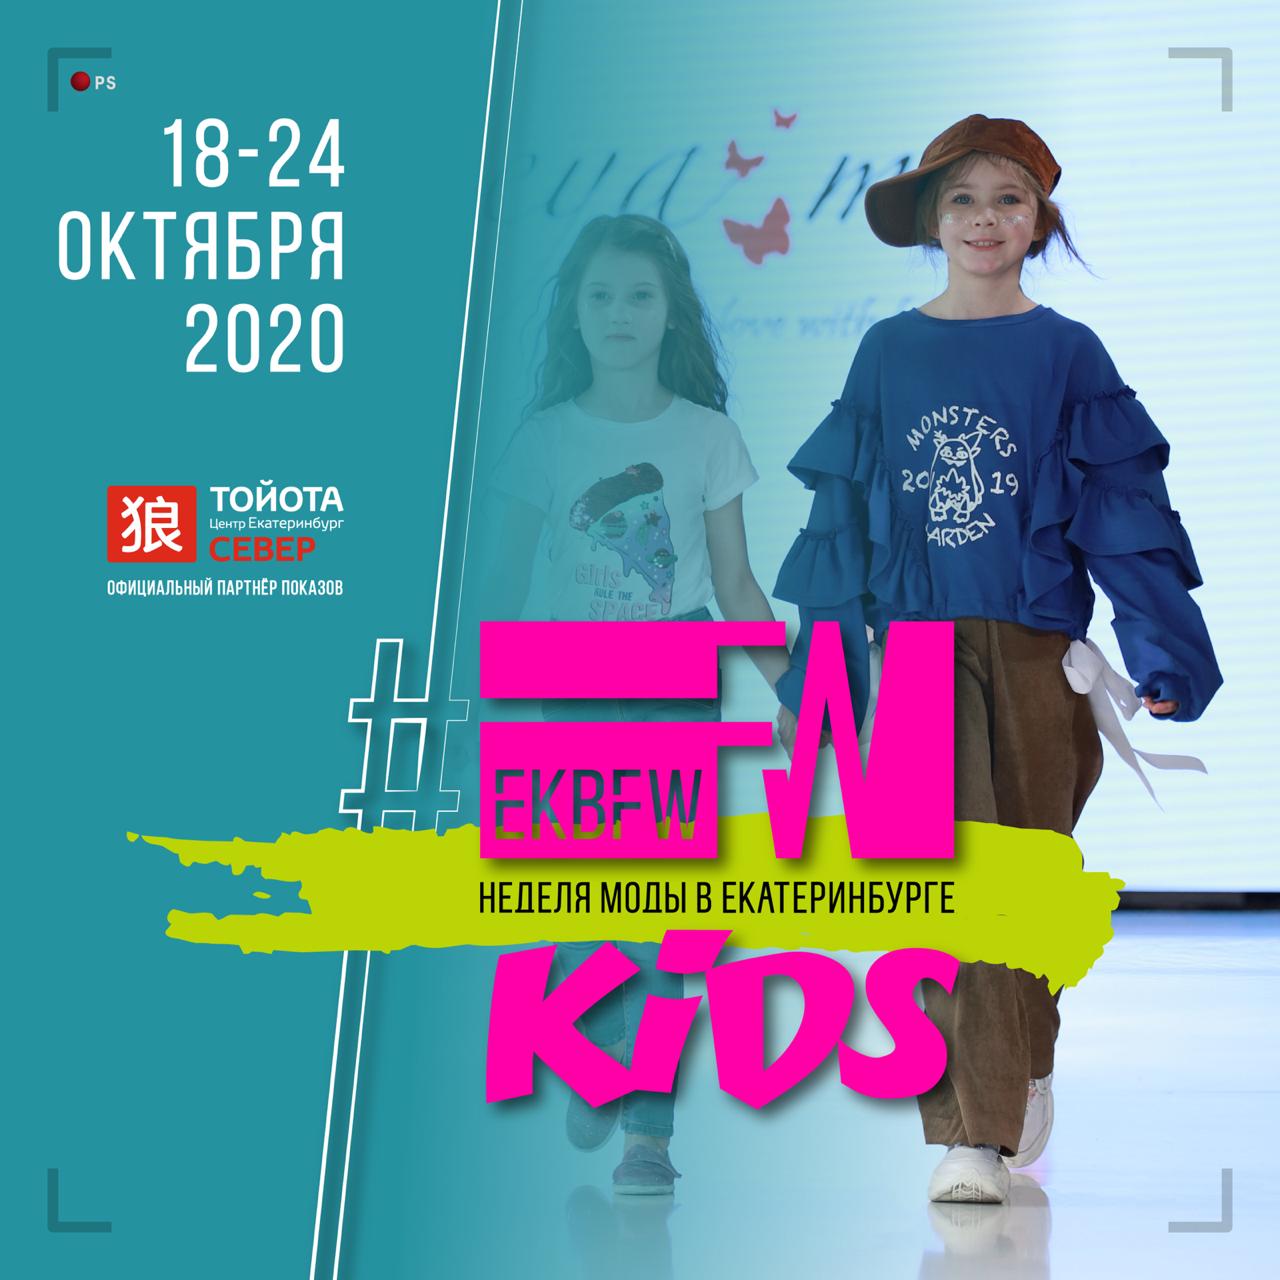 EKBFW kids: образовательная программа для родителей и детские показы